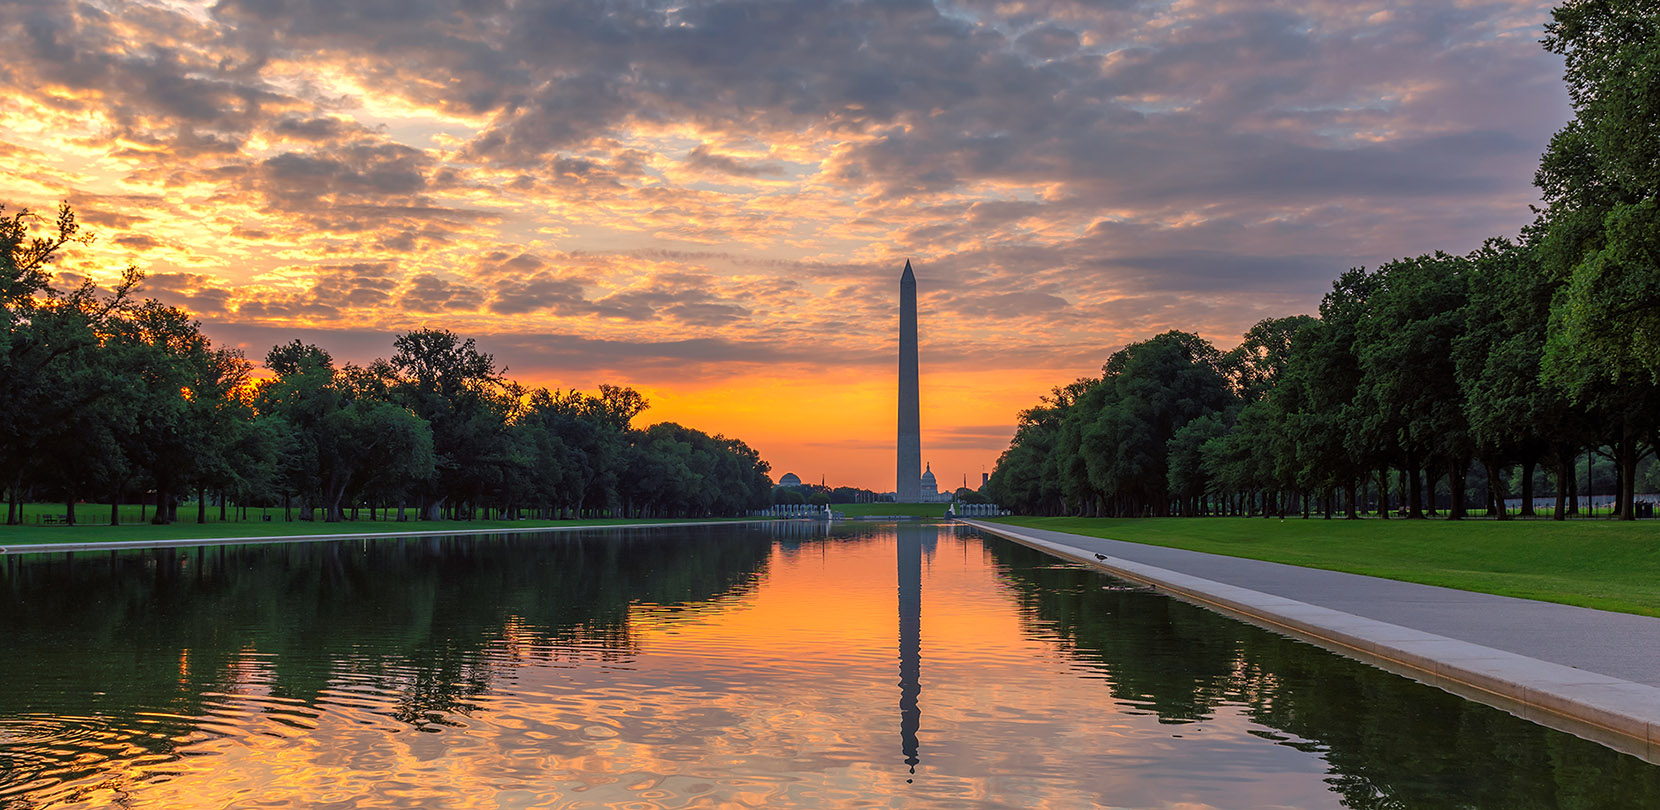 Washington monument at sunset